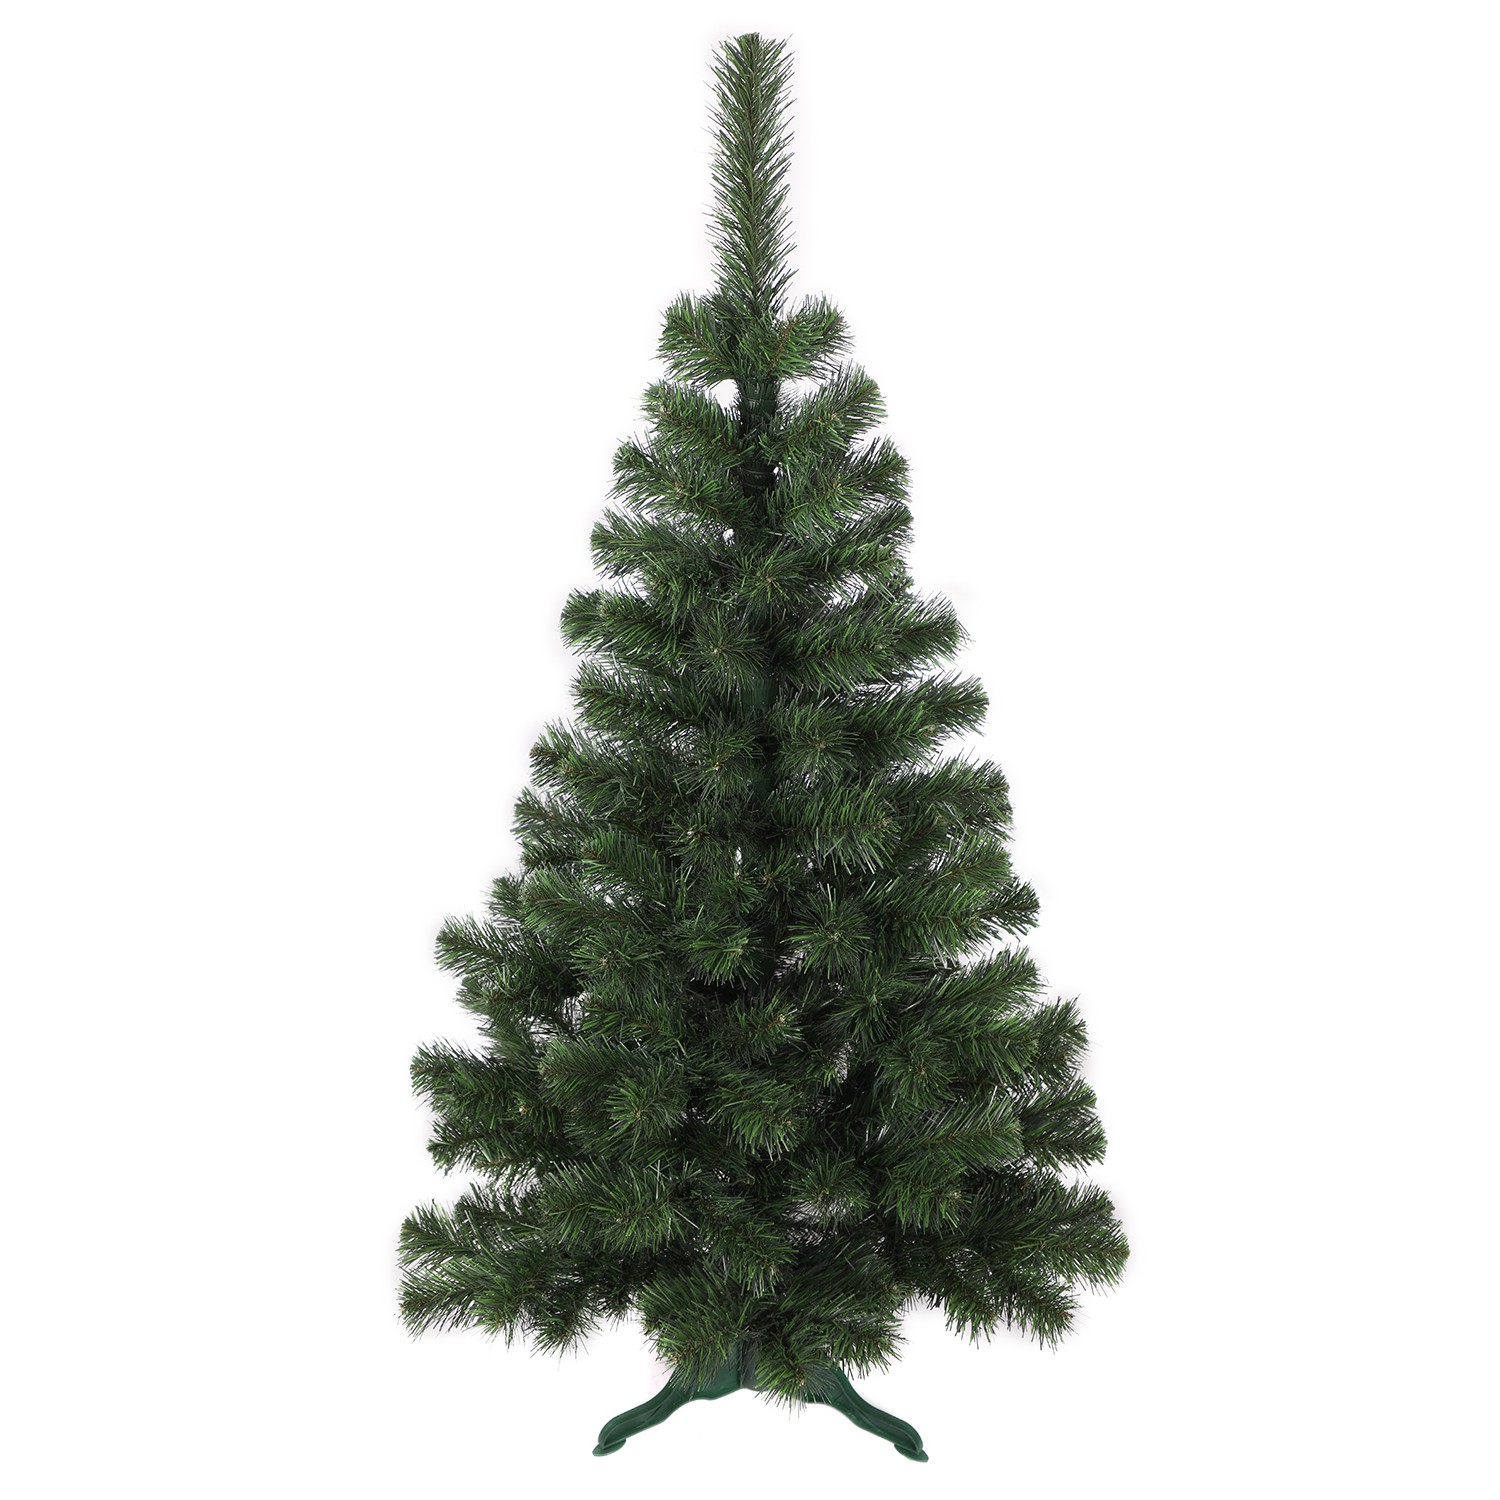 E-shop domtextilu.sk Kvalitný umelý vianočný stromček borovica 150 cm 47452